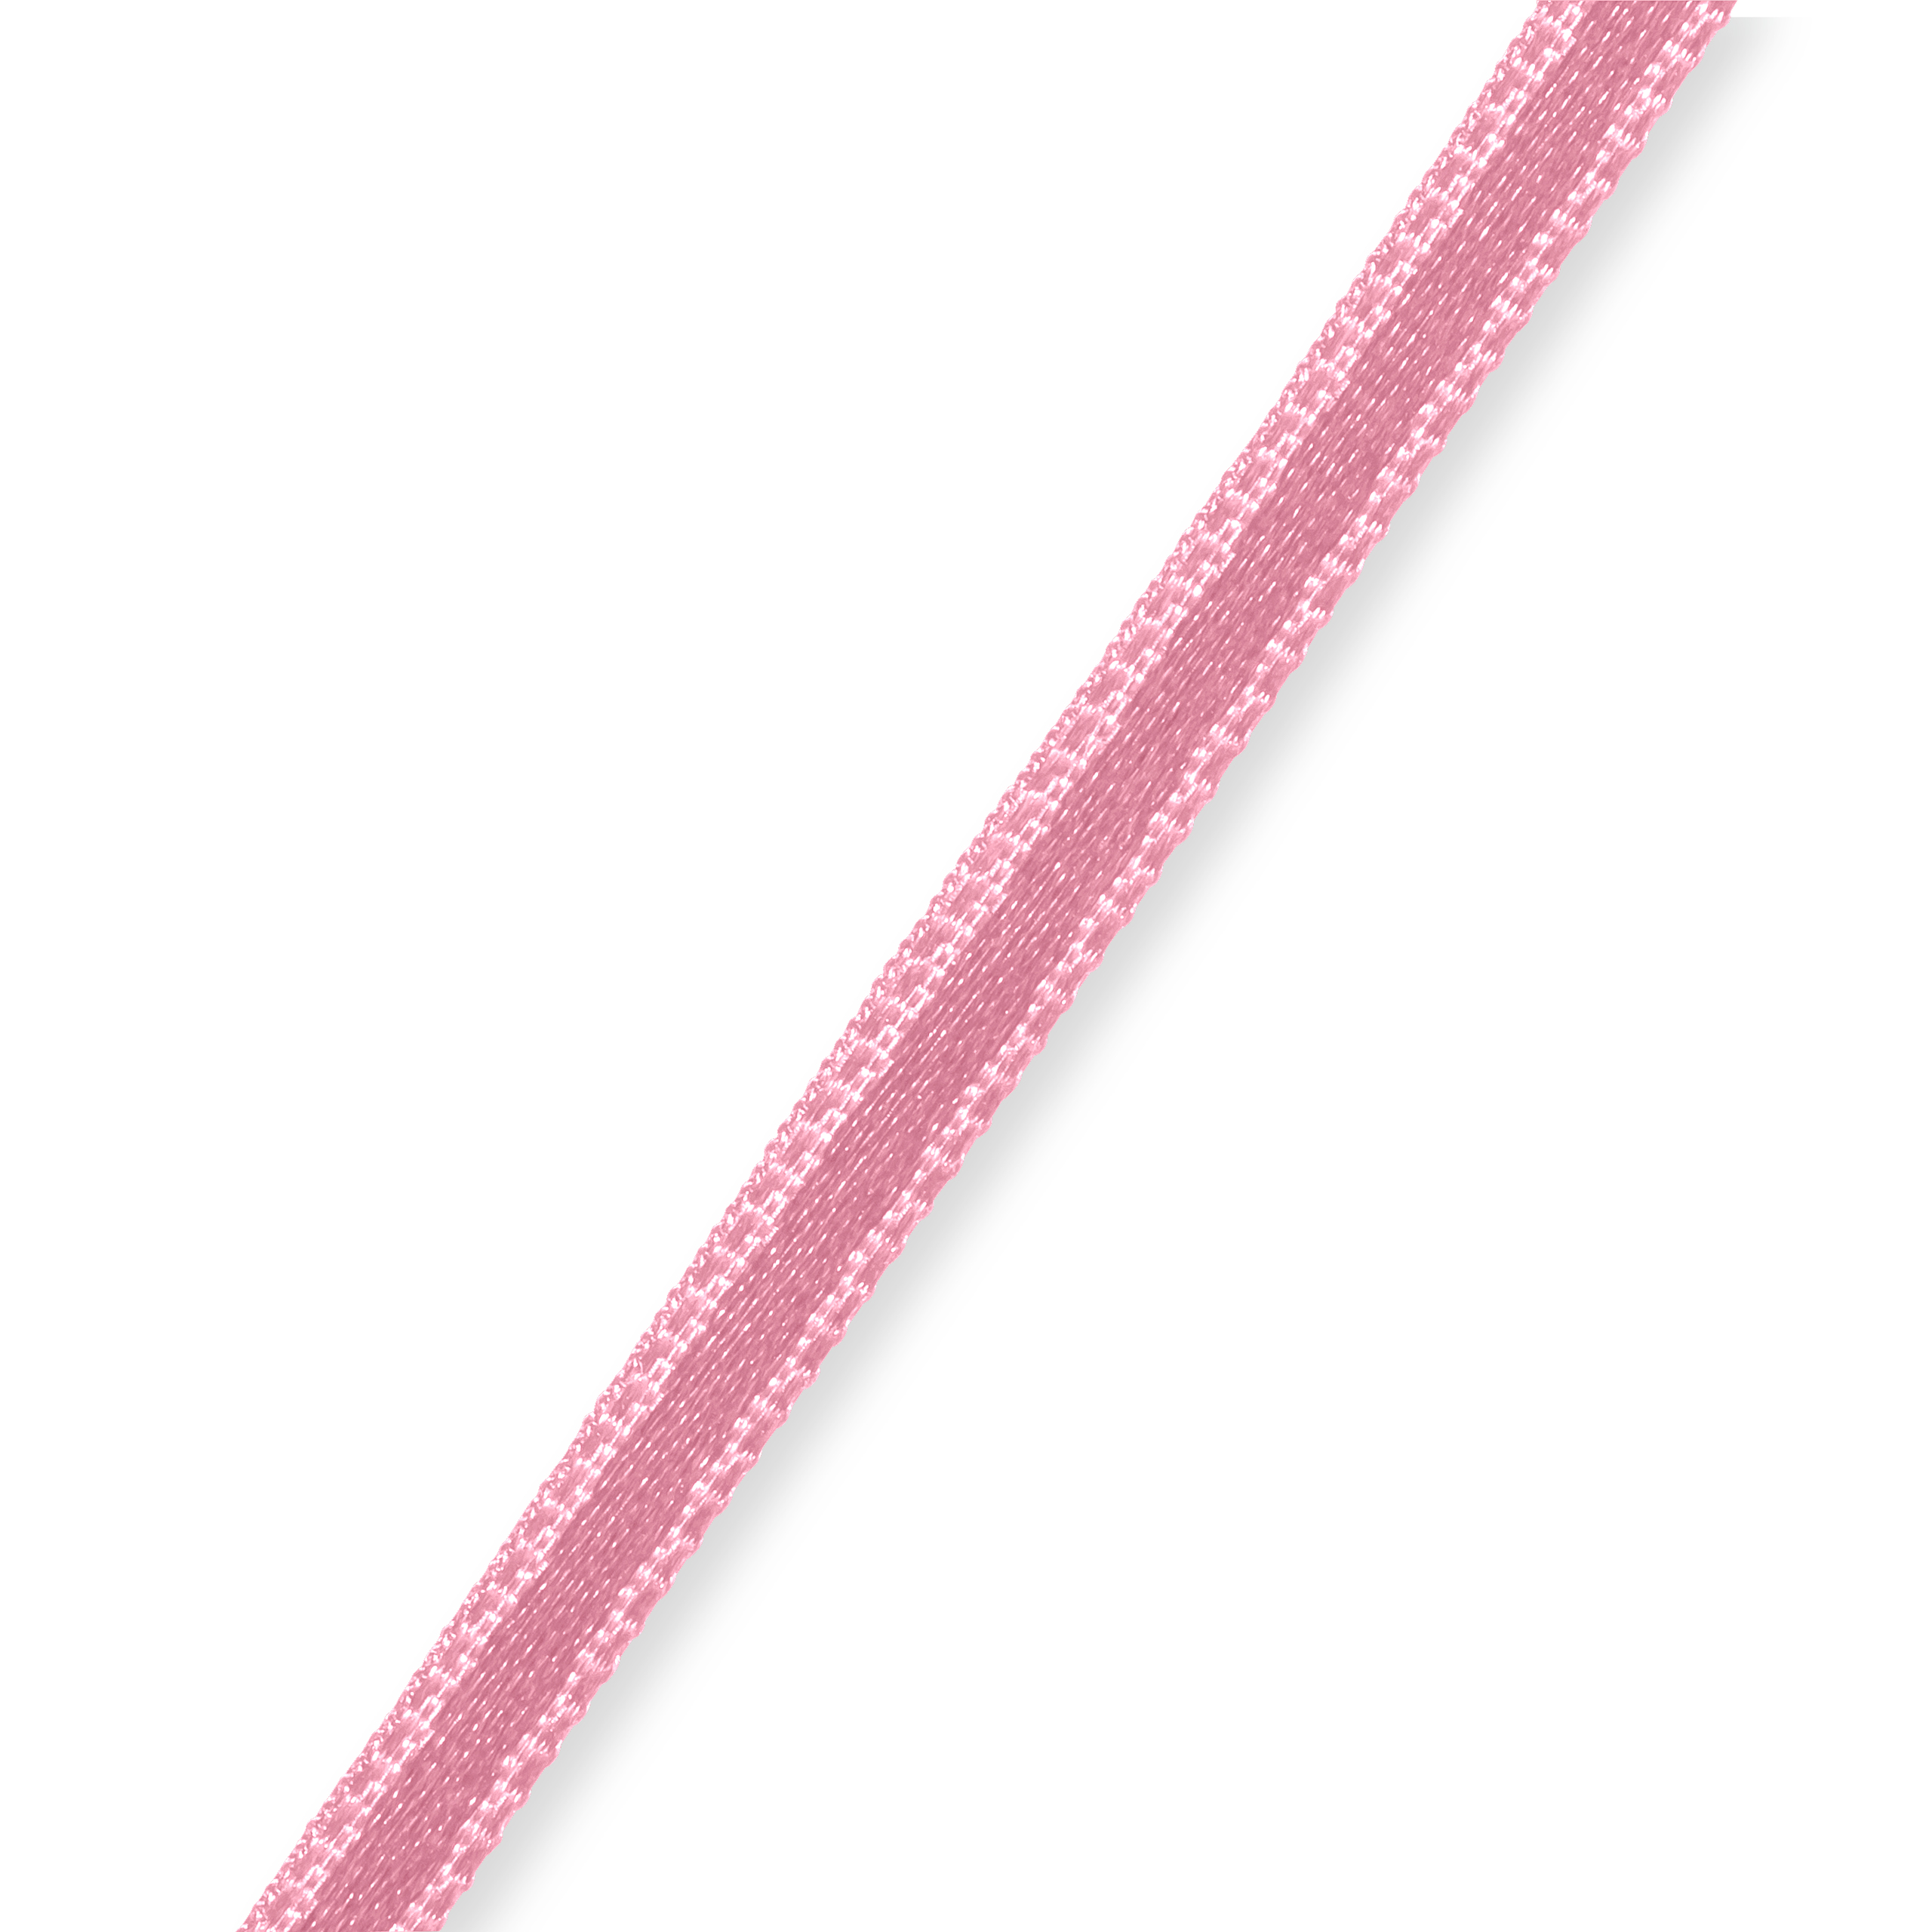 Satin ribbon 3 mm pale pink, 50 m